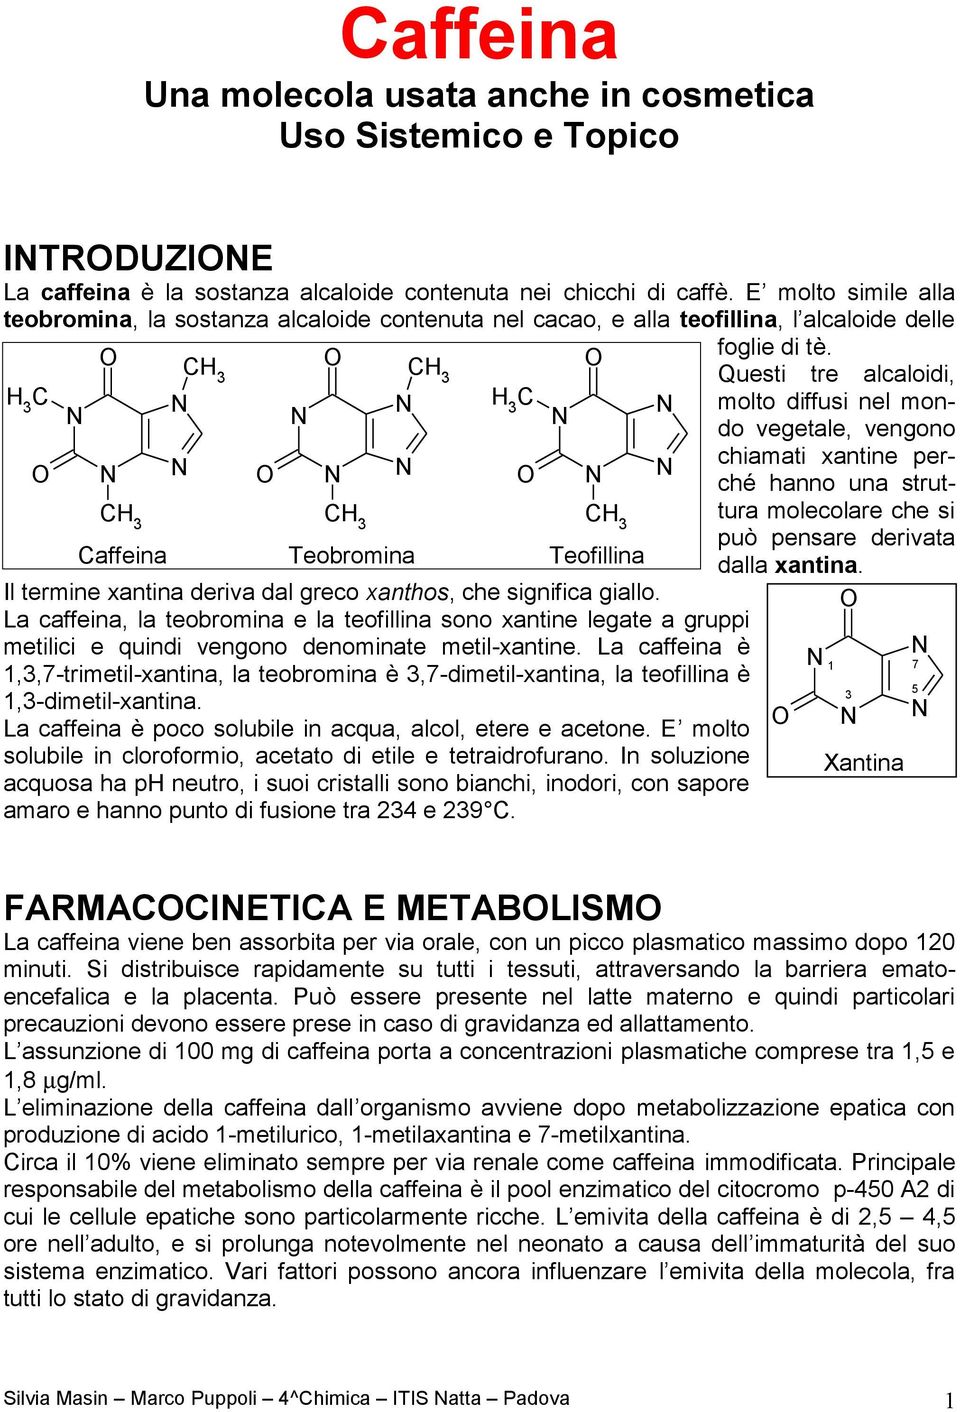 La caffeina, la teobromina e la teofillina sono xantine legate a gruppi metilici e quindi vengono denominate metilxantine.